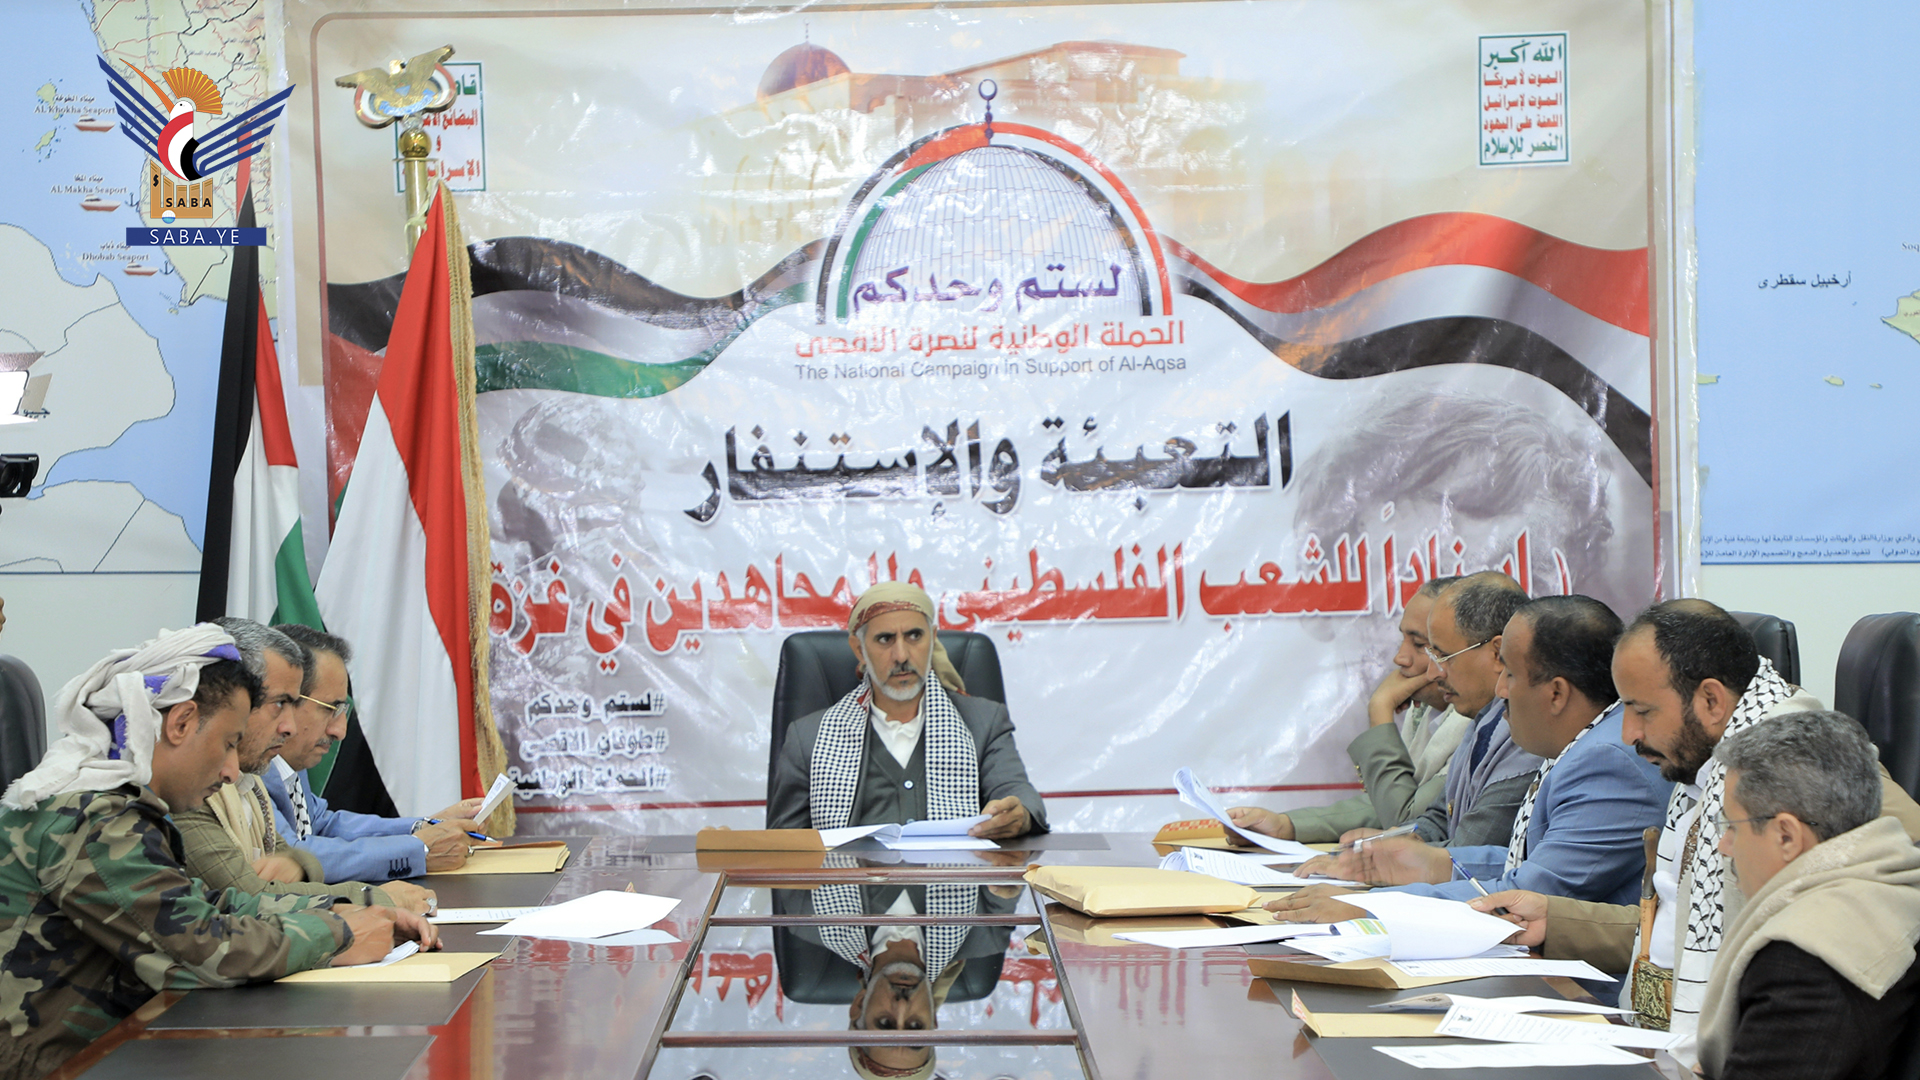 اللجنة العليا لنصرة الأقصى تقر برنامج عملها الميداني المقبل